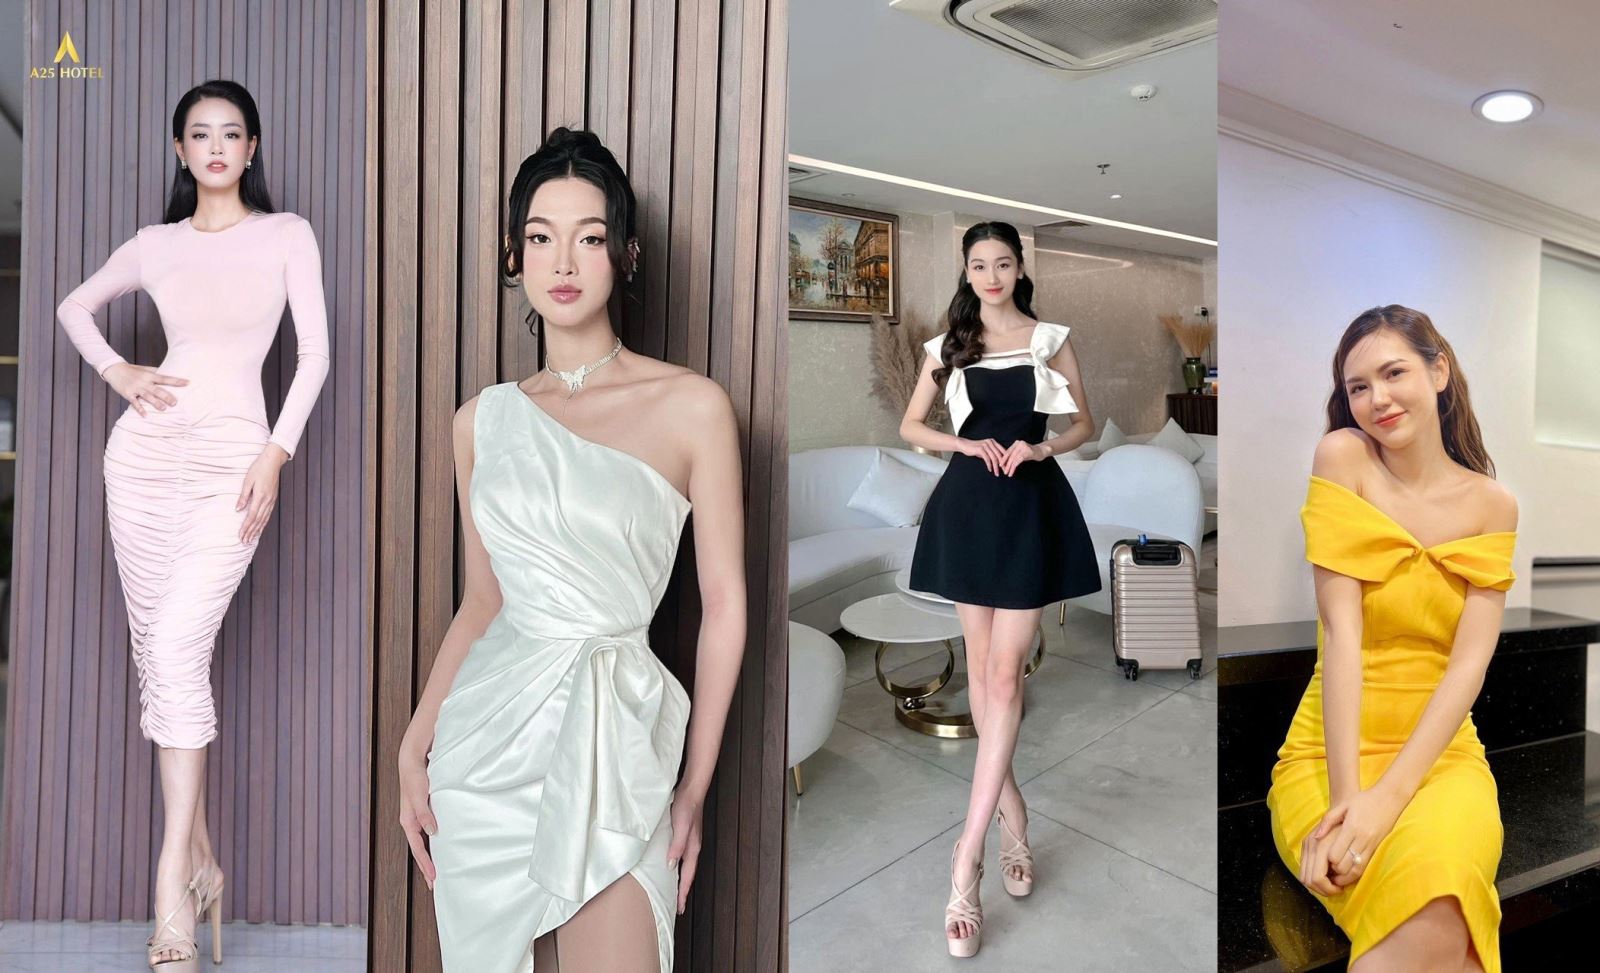 A25 Hotel 53 Cách Mạng Tháng Tám TPHCM: Chào đón những bông hoa xinh đẹp trước vòng sơ loại Miss World Việt Nam 2023